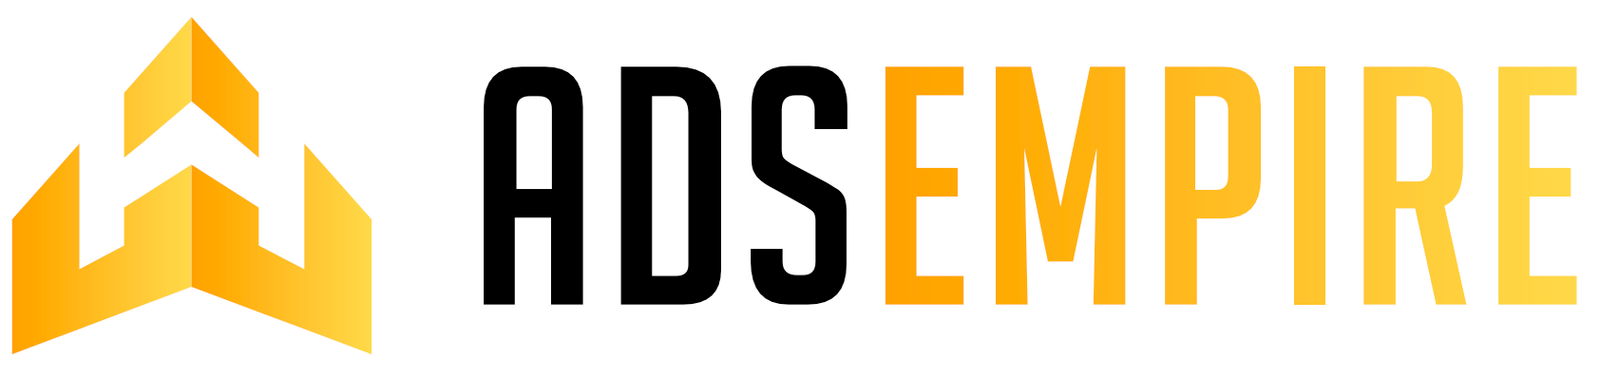 AdsEmpire Logo